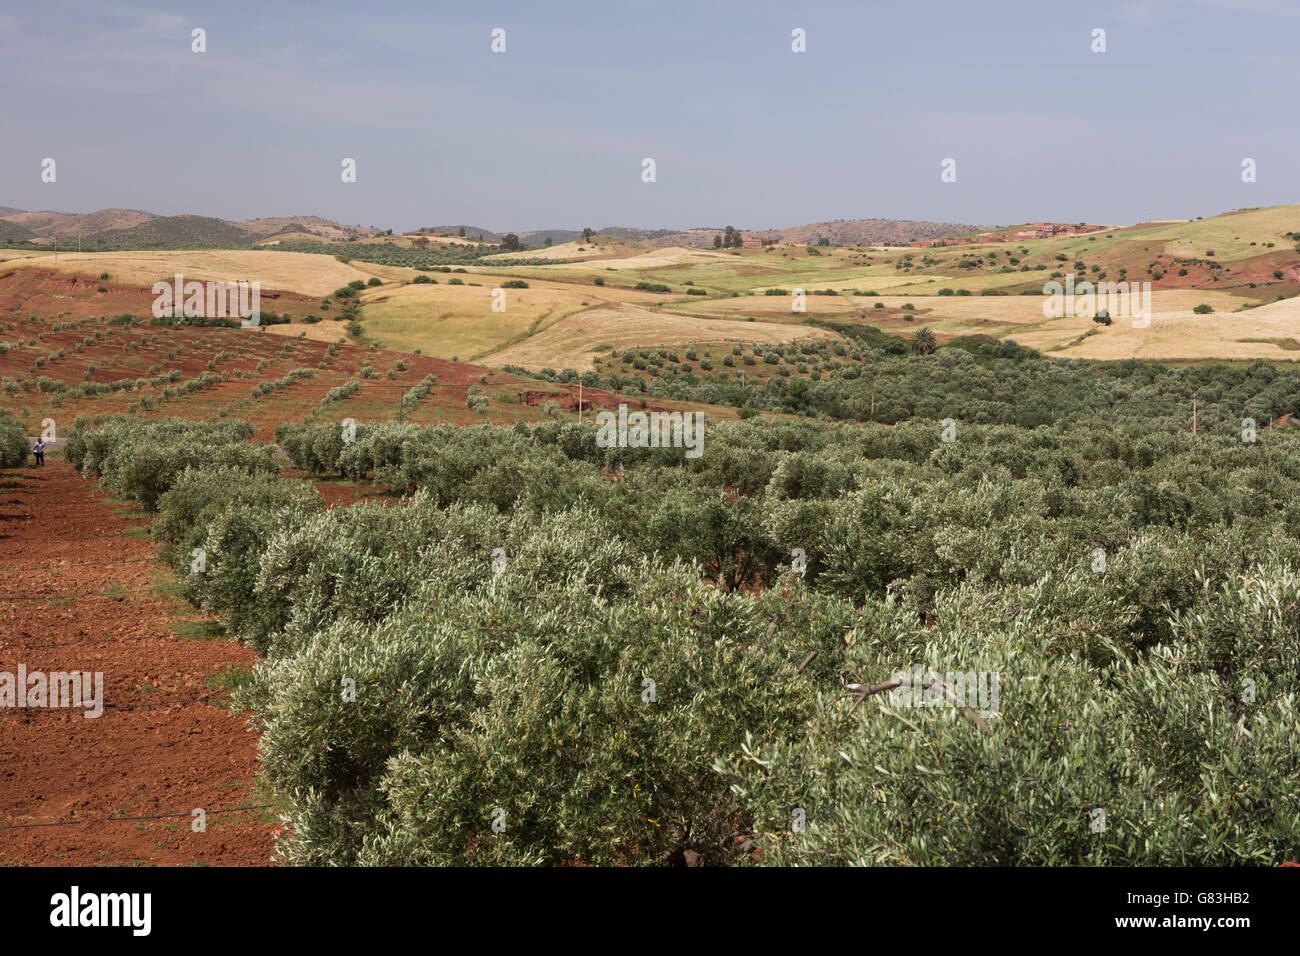 Un arbre d'olive grove est irriguée à l'extérieur de la ville de S'Hak, au centre du Maroc. Banque D'Images